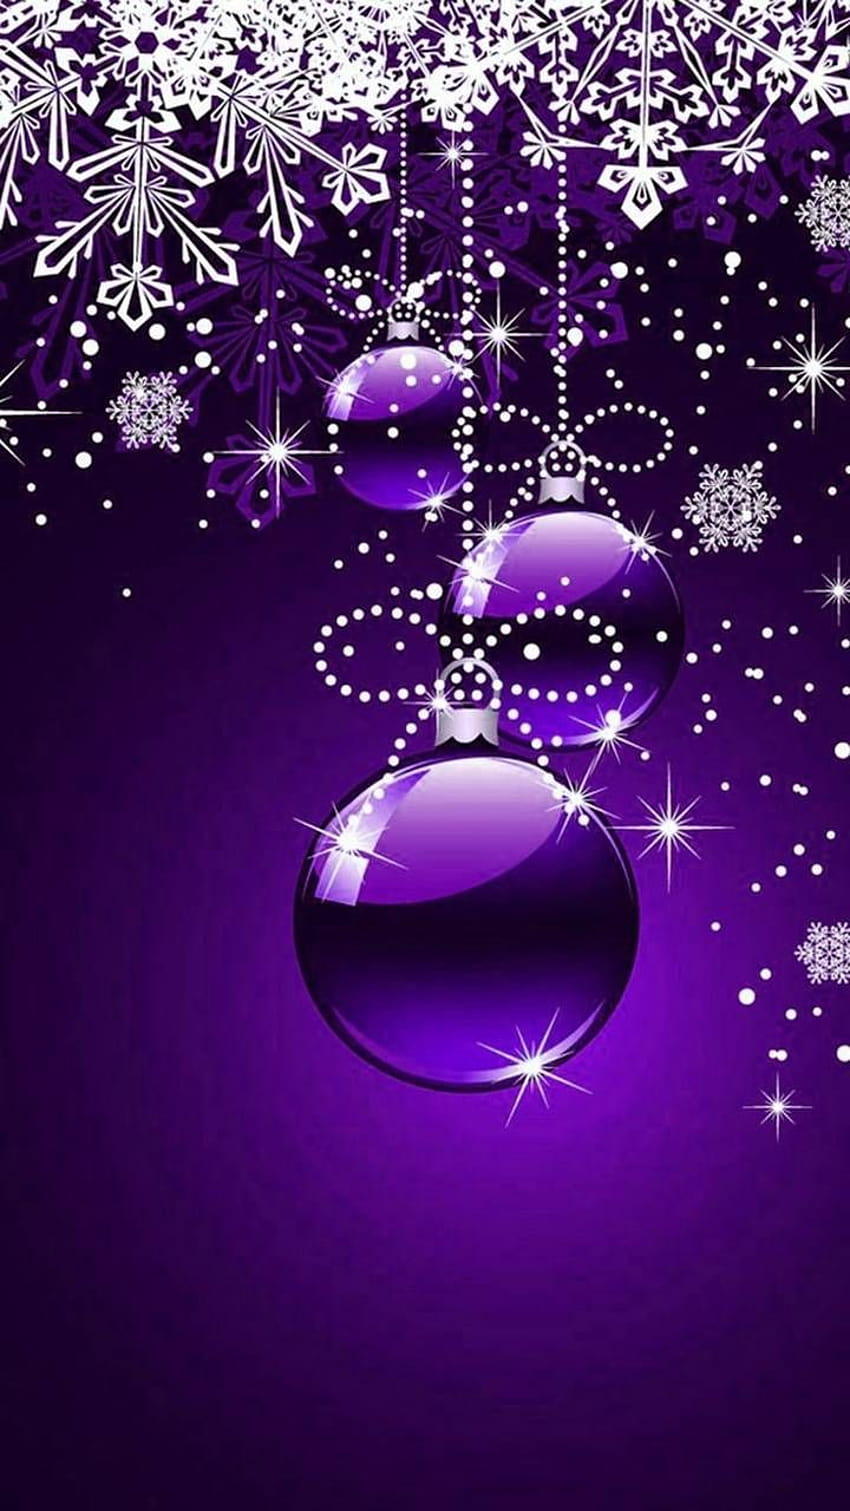 Tổng hợp 700 Background purple christmas wallpaper chất lượng cao ...